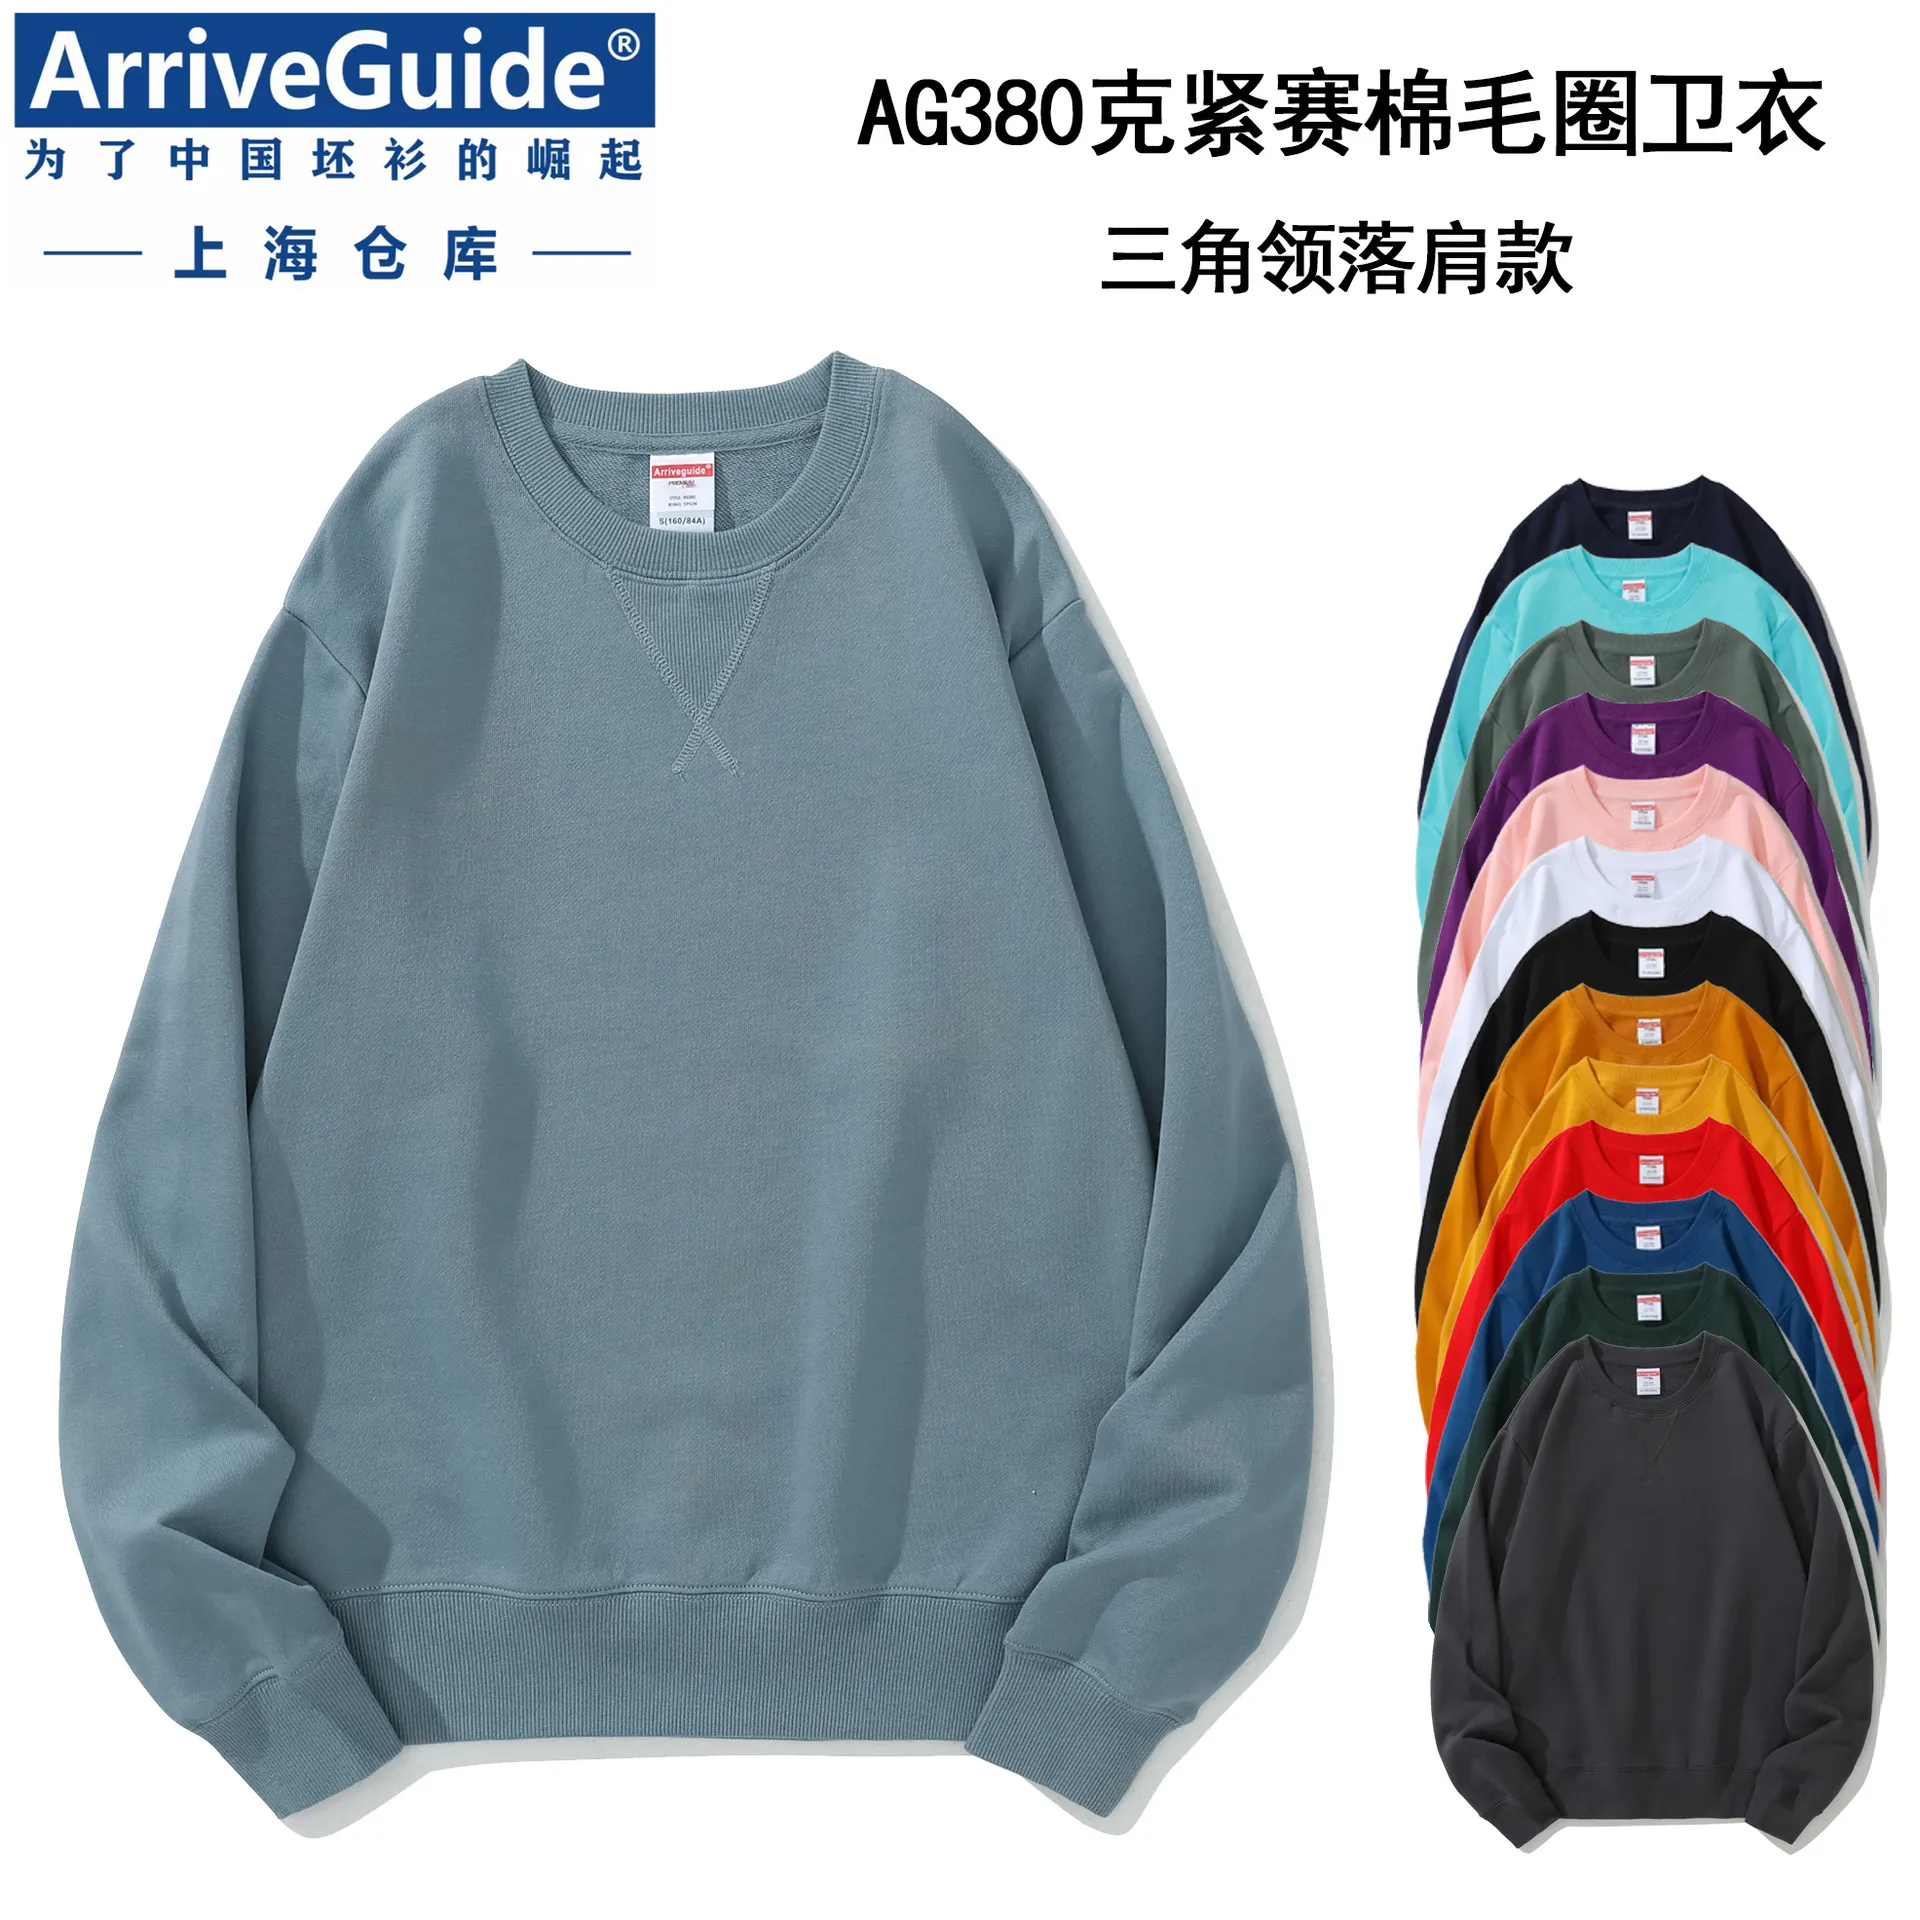 Sweat-shirt à capuche en coton et laine lourde pour hommes, AG380g, cercle, col rond, triangle inversé, couleur unie, impression d'images à la mode